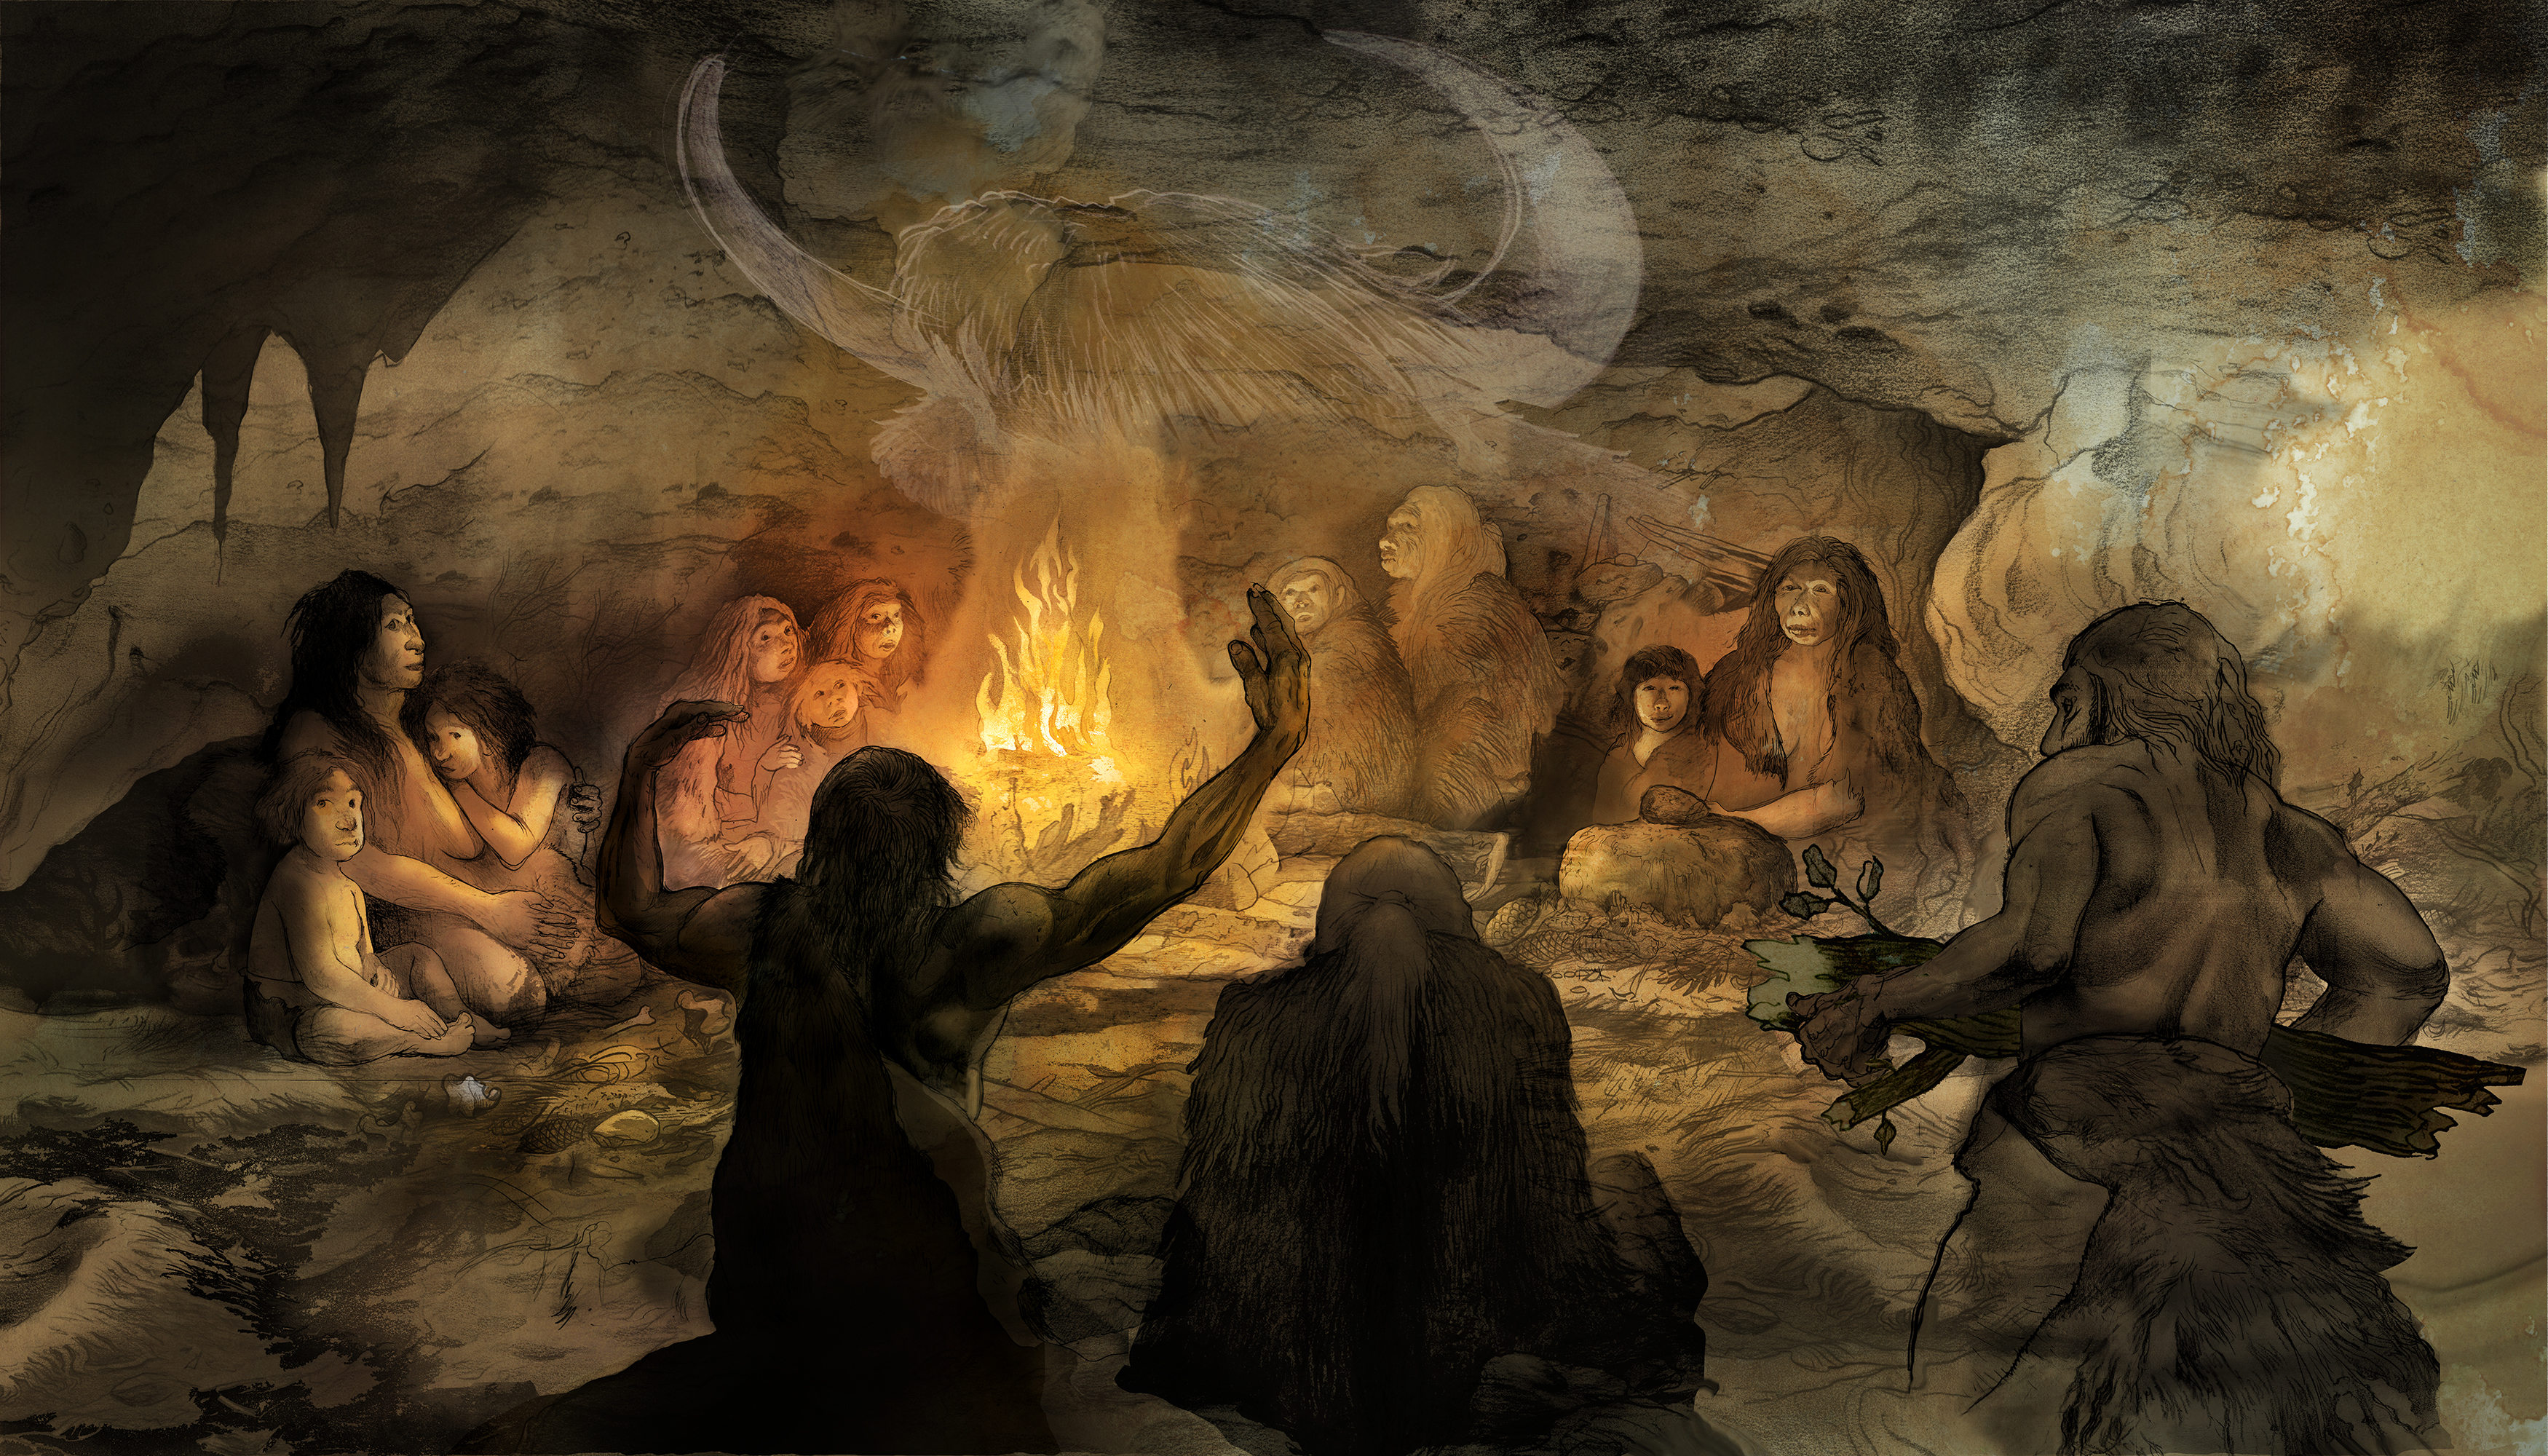 Ilustración que representa un posible ritual neandertal, proporcionada por el Museo de la Evolución Humana.